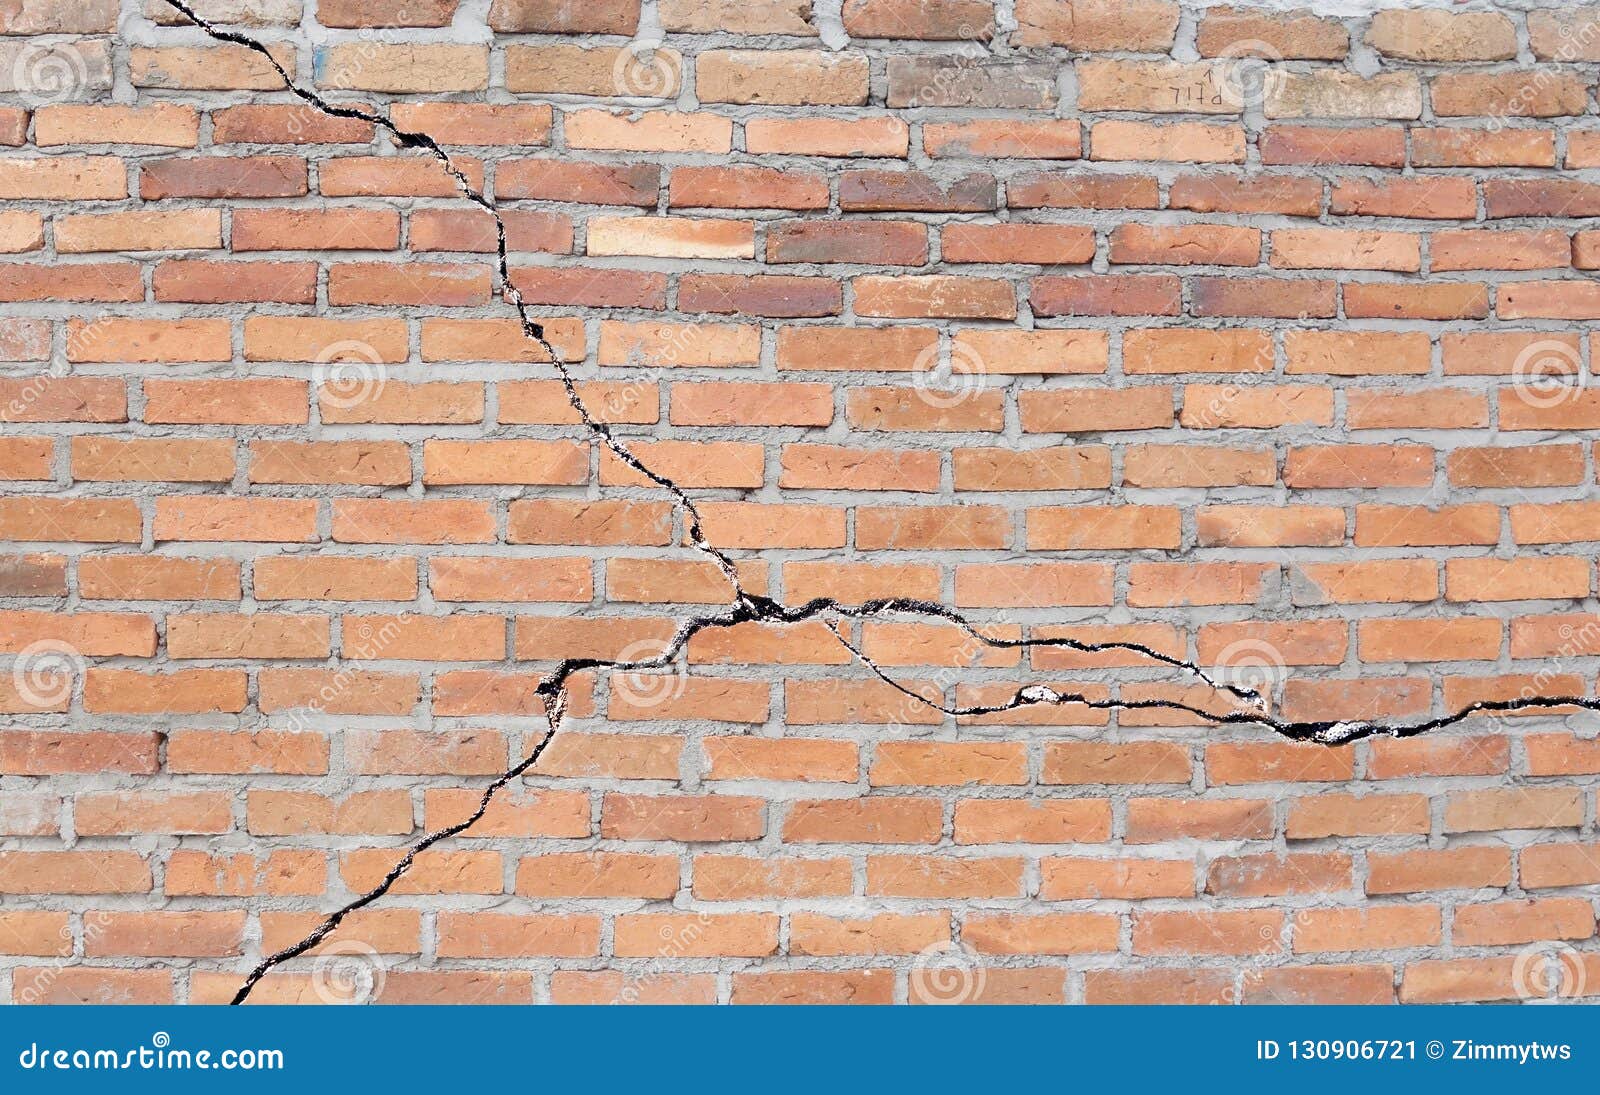 cracked brick foundation